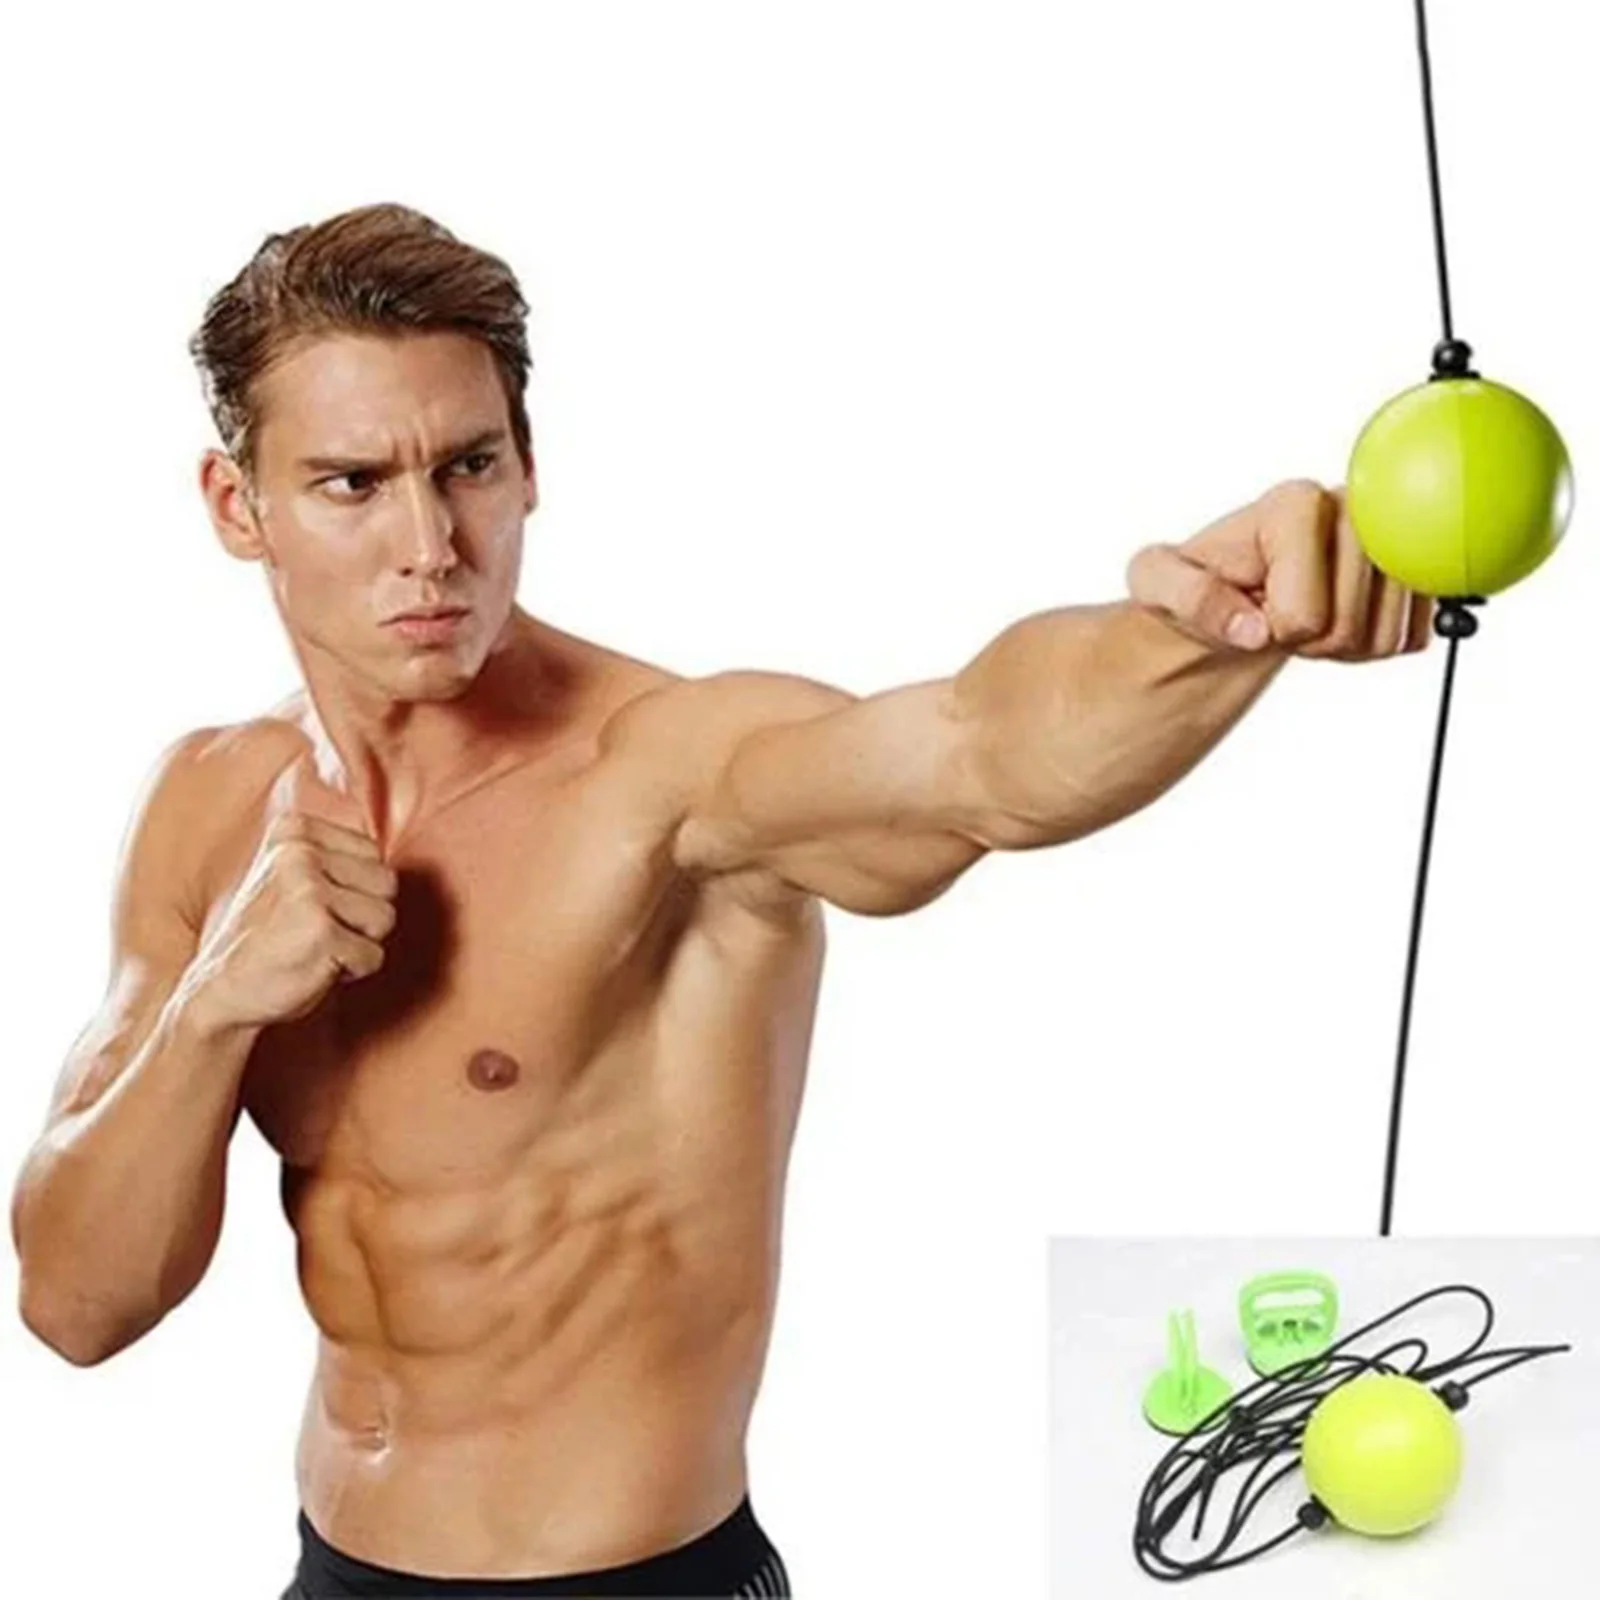 

Ne тренировочный мяч для рефлекса бокса Быстрый дырокол для фитнеса Спортивное практическое оборудование двухсторонний скоростной мяч для ...